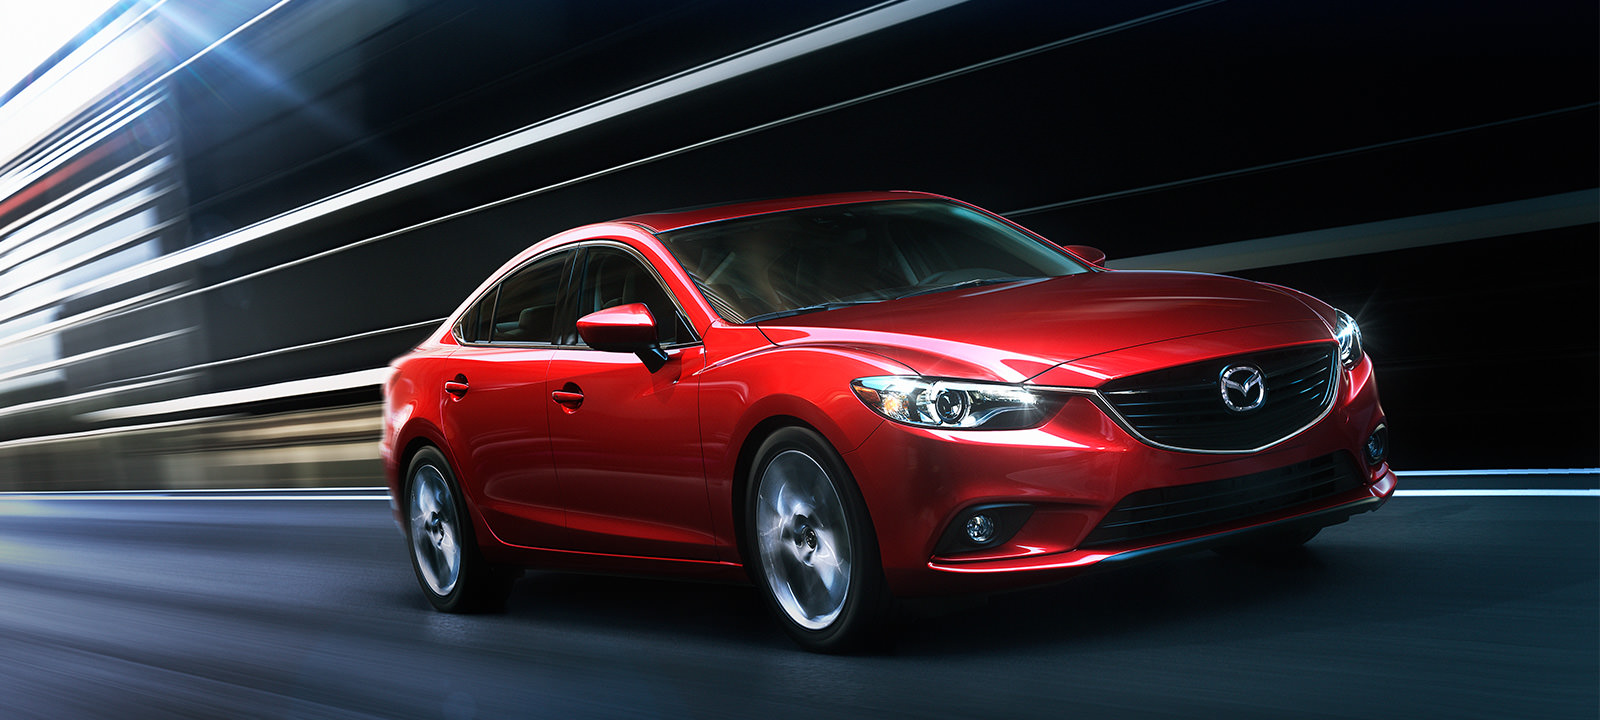 Ô tô giá rẻ Mazda6 2015 với các phiên bản tiết kiệm nhiên liệu tương đương